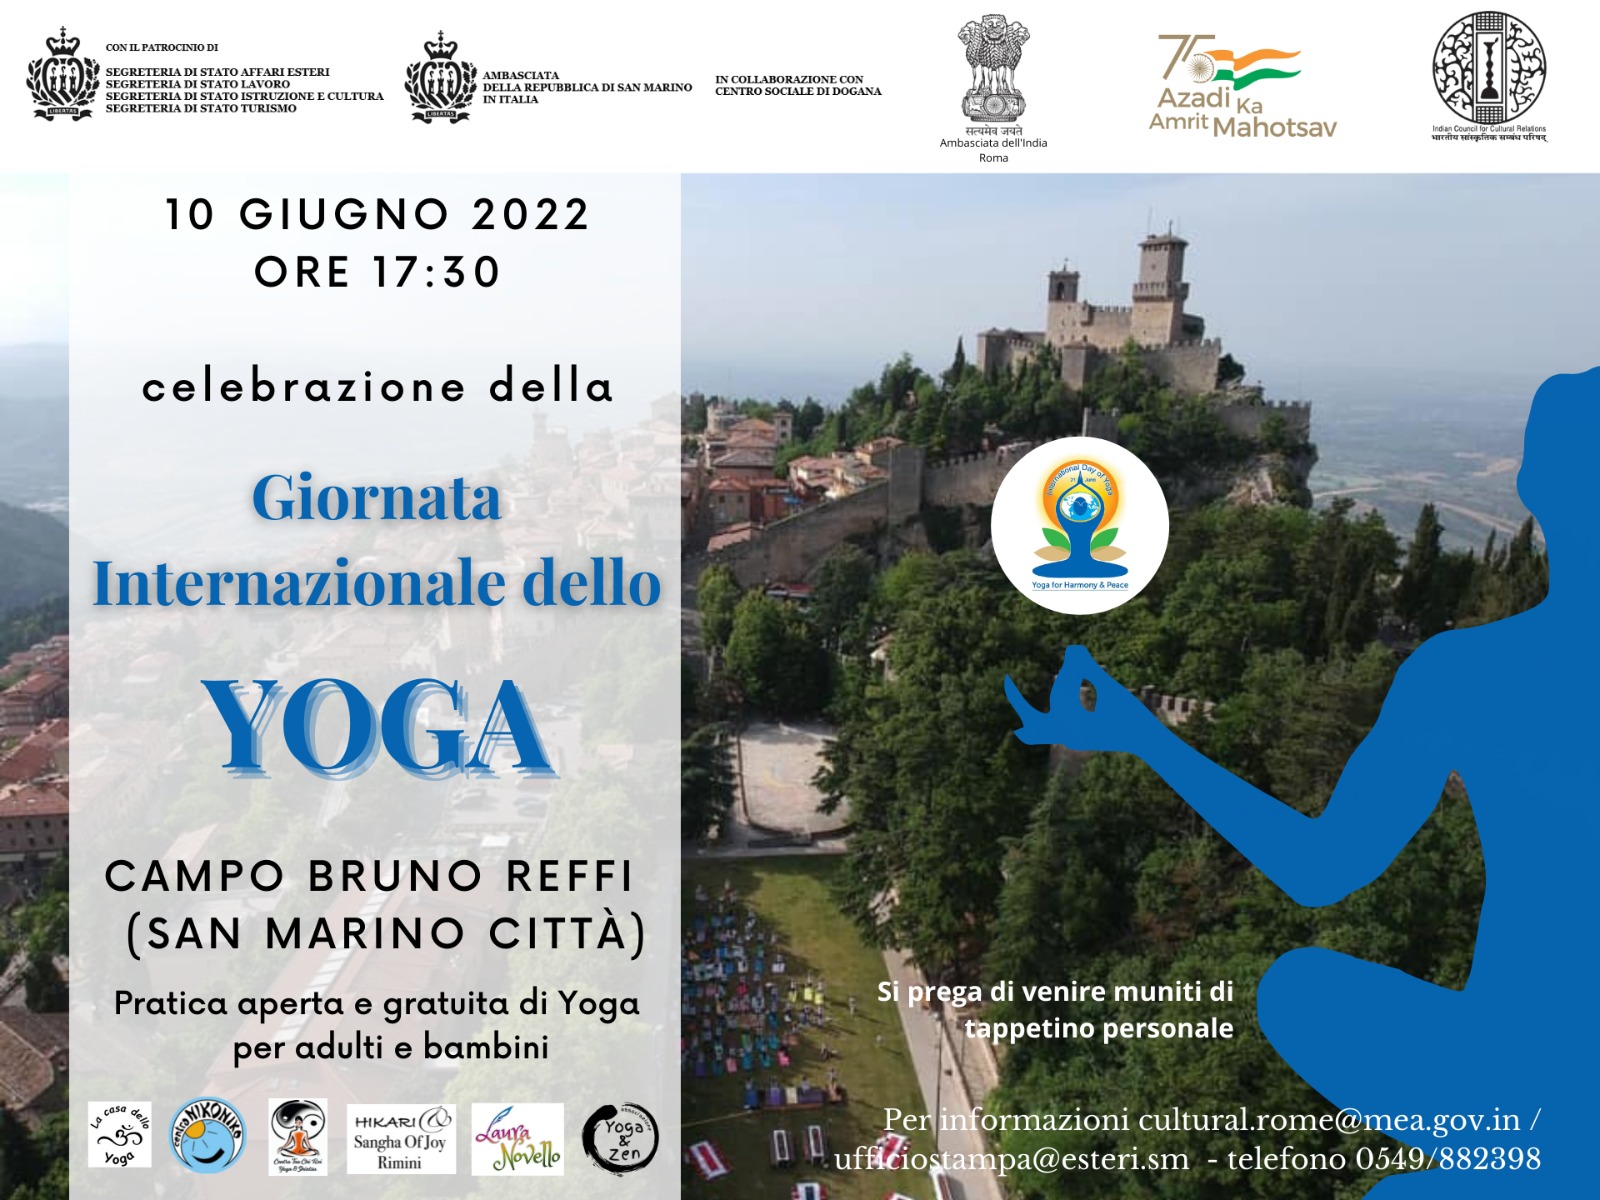 San Marino. L’evento in occasione della Giornata Internazionale delle Yoga spostato al Centro Congressi Kursaal